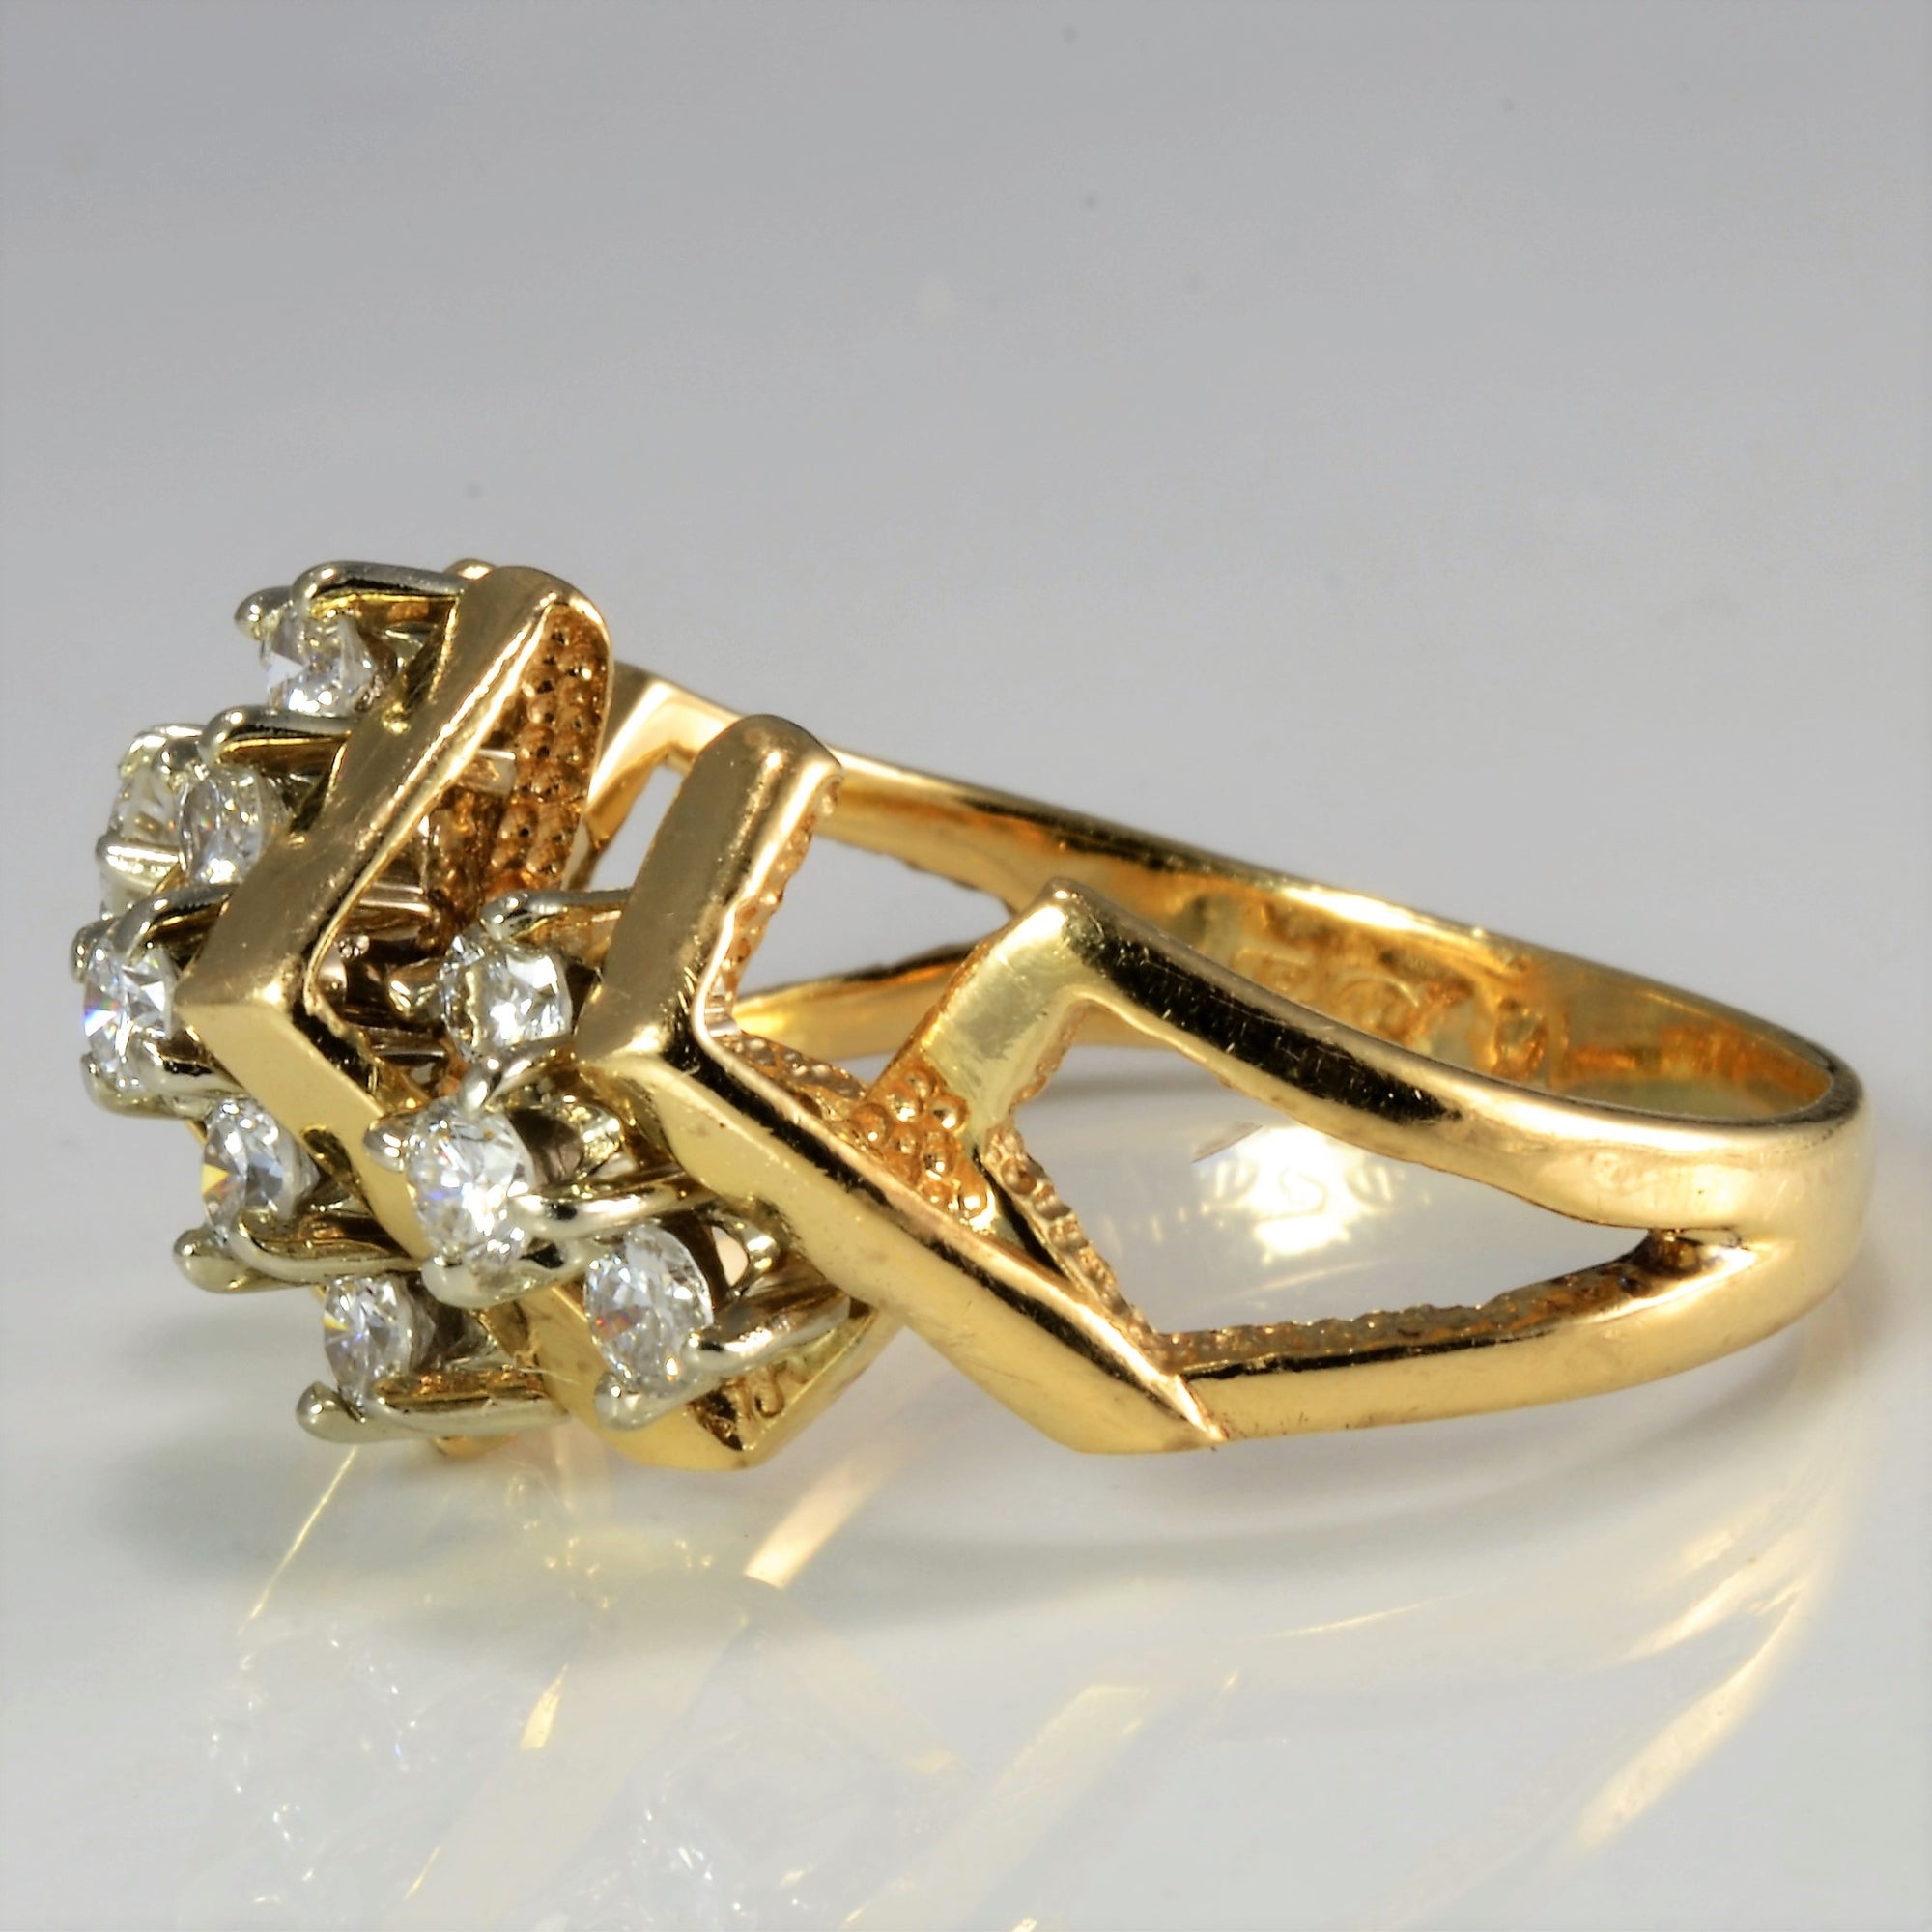 Textured Pave Diamond Ladies Ring | 0.48 ctw, SZ 7.75 |